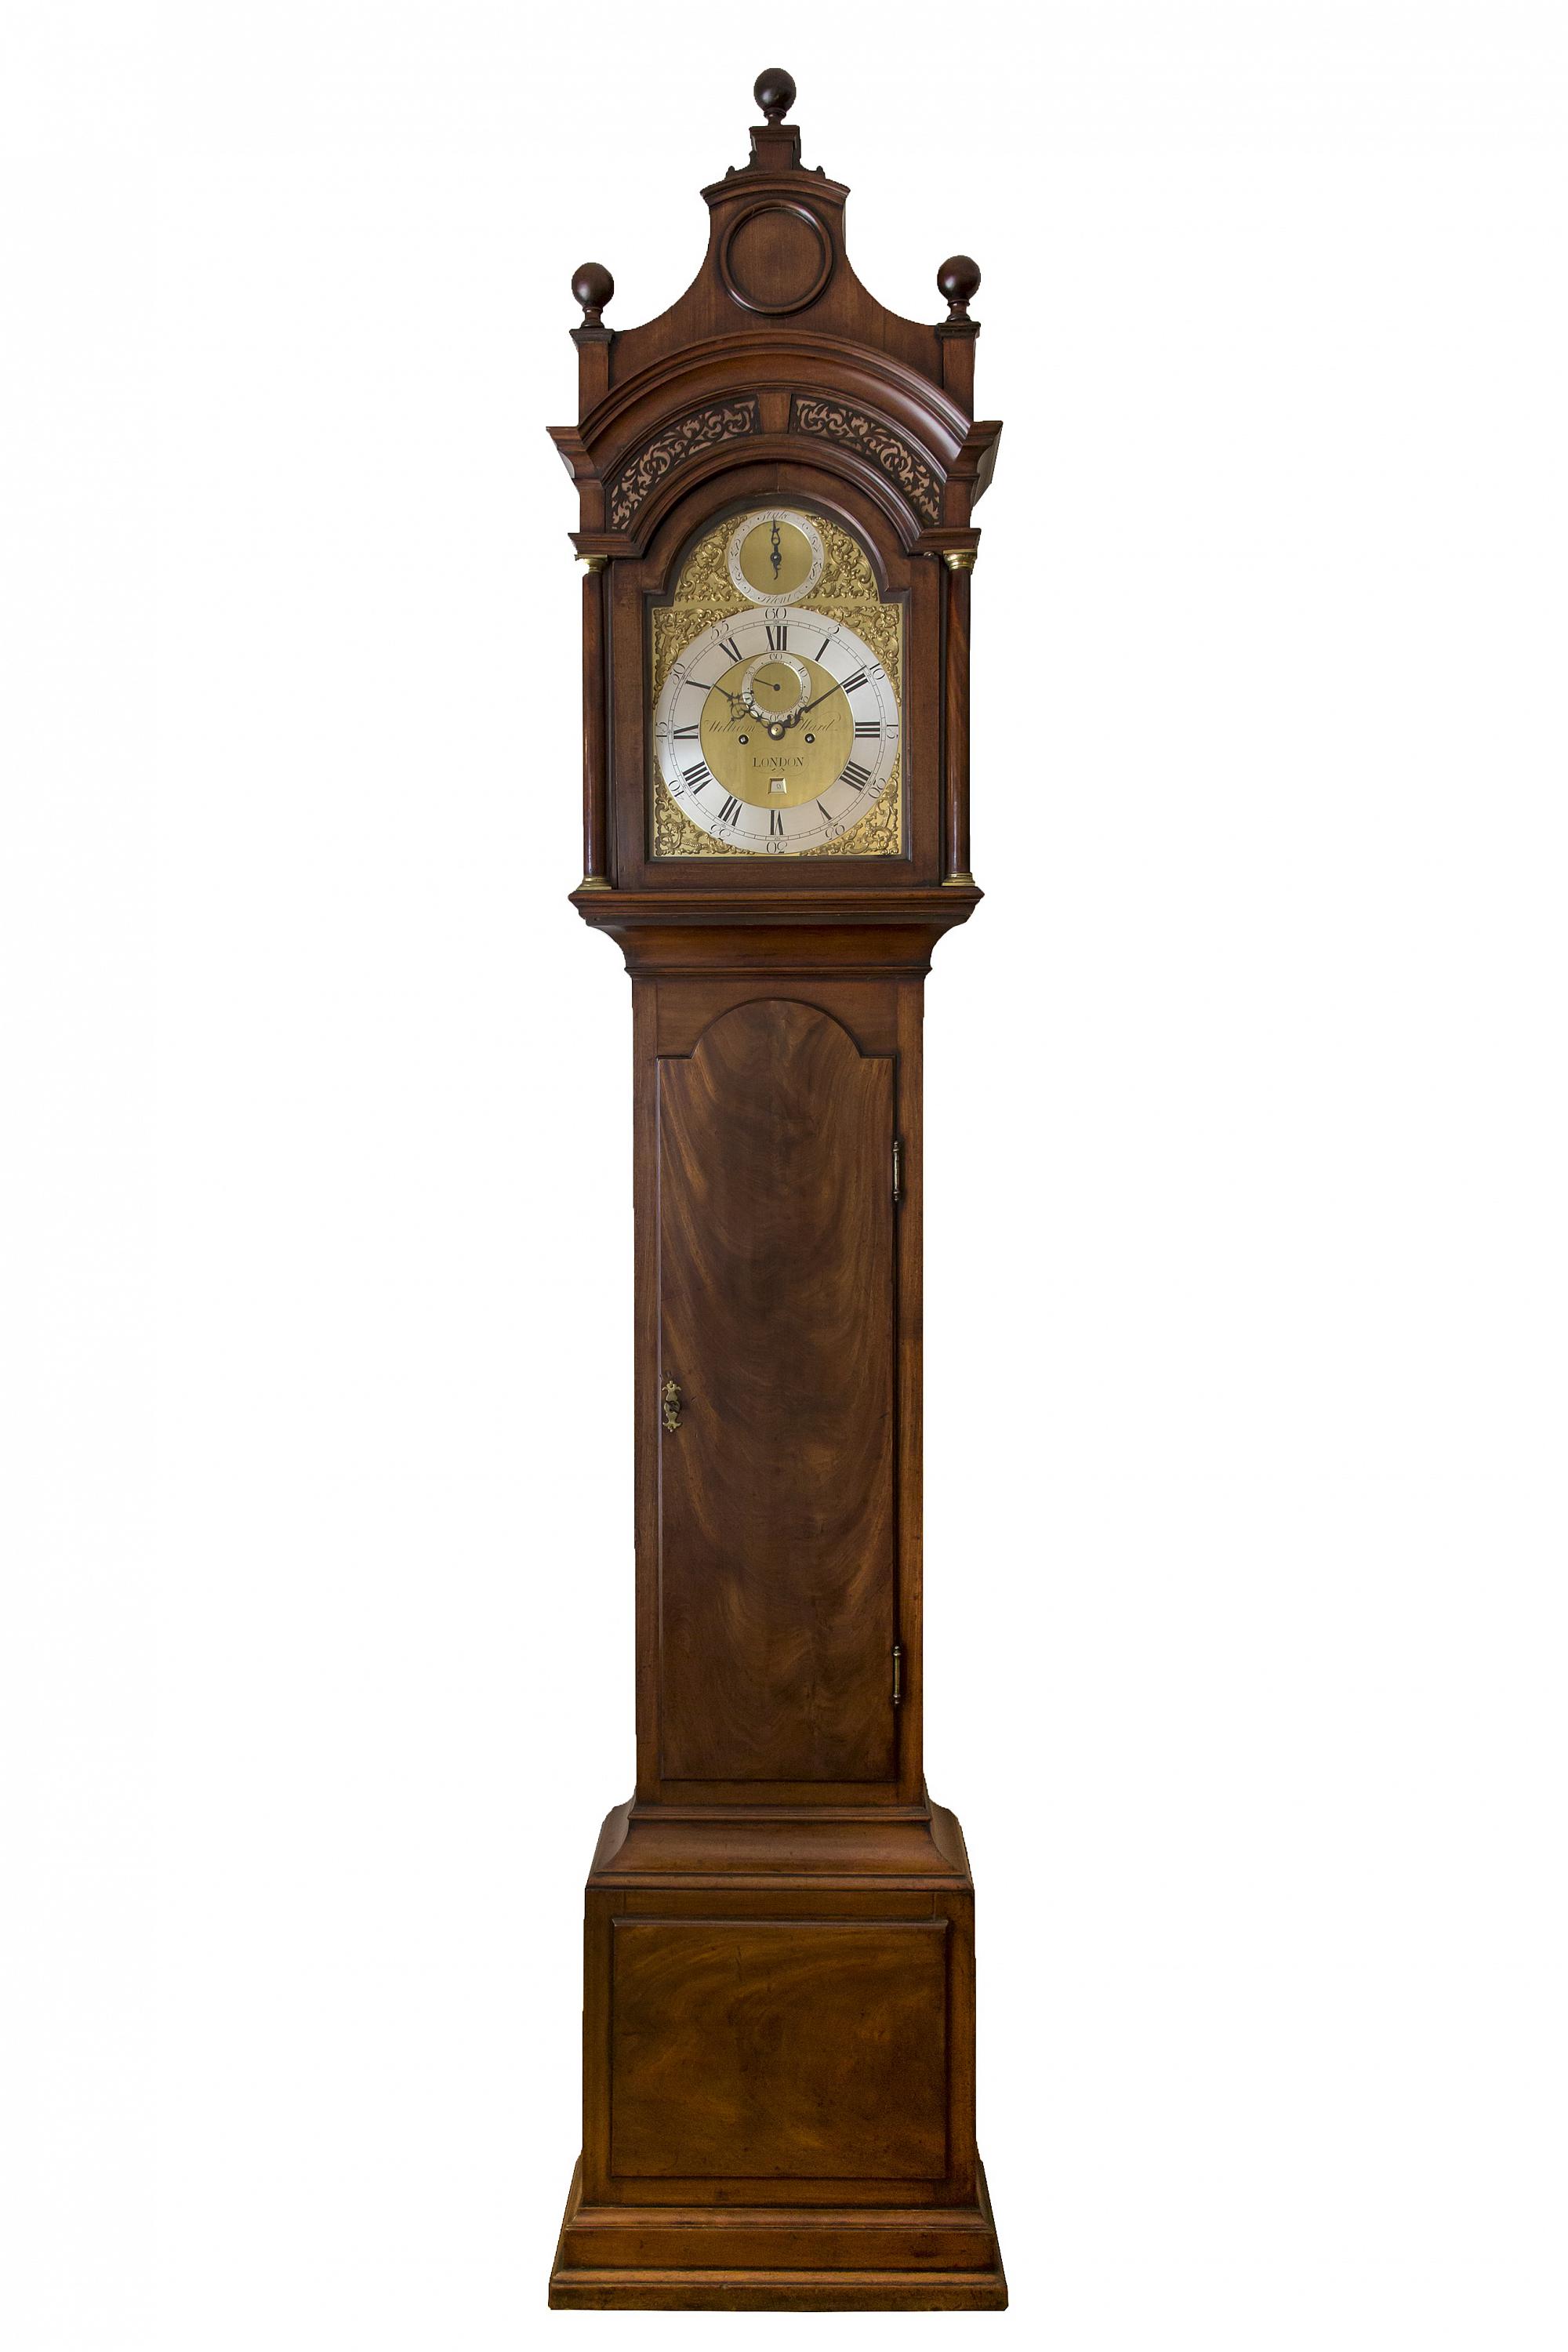 Kelder bedreiging Leonardoda Een Engelse Mahonie staande klok William Ward London, circa 1770 - Gude &  Meis | Antieke klokken